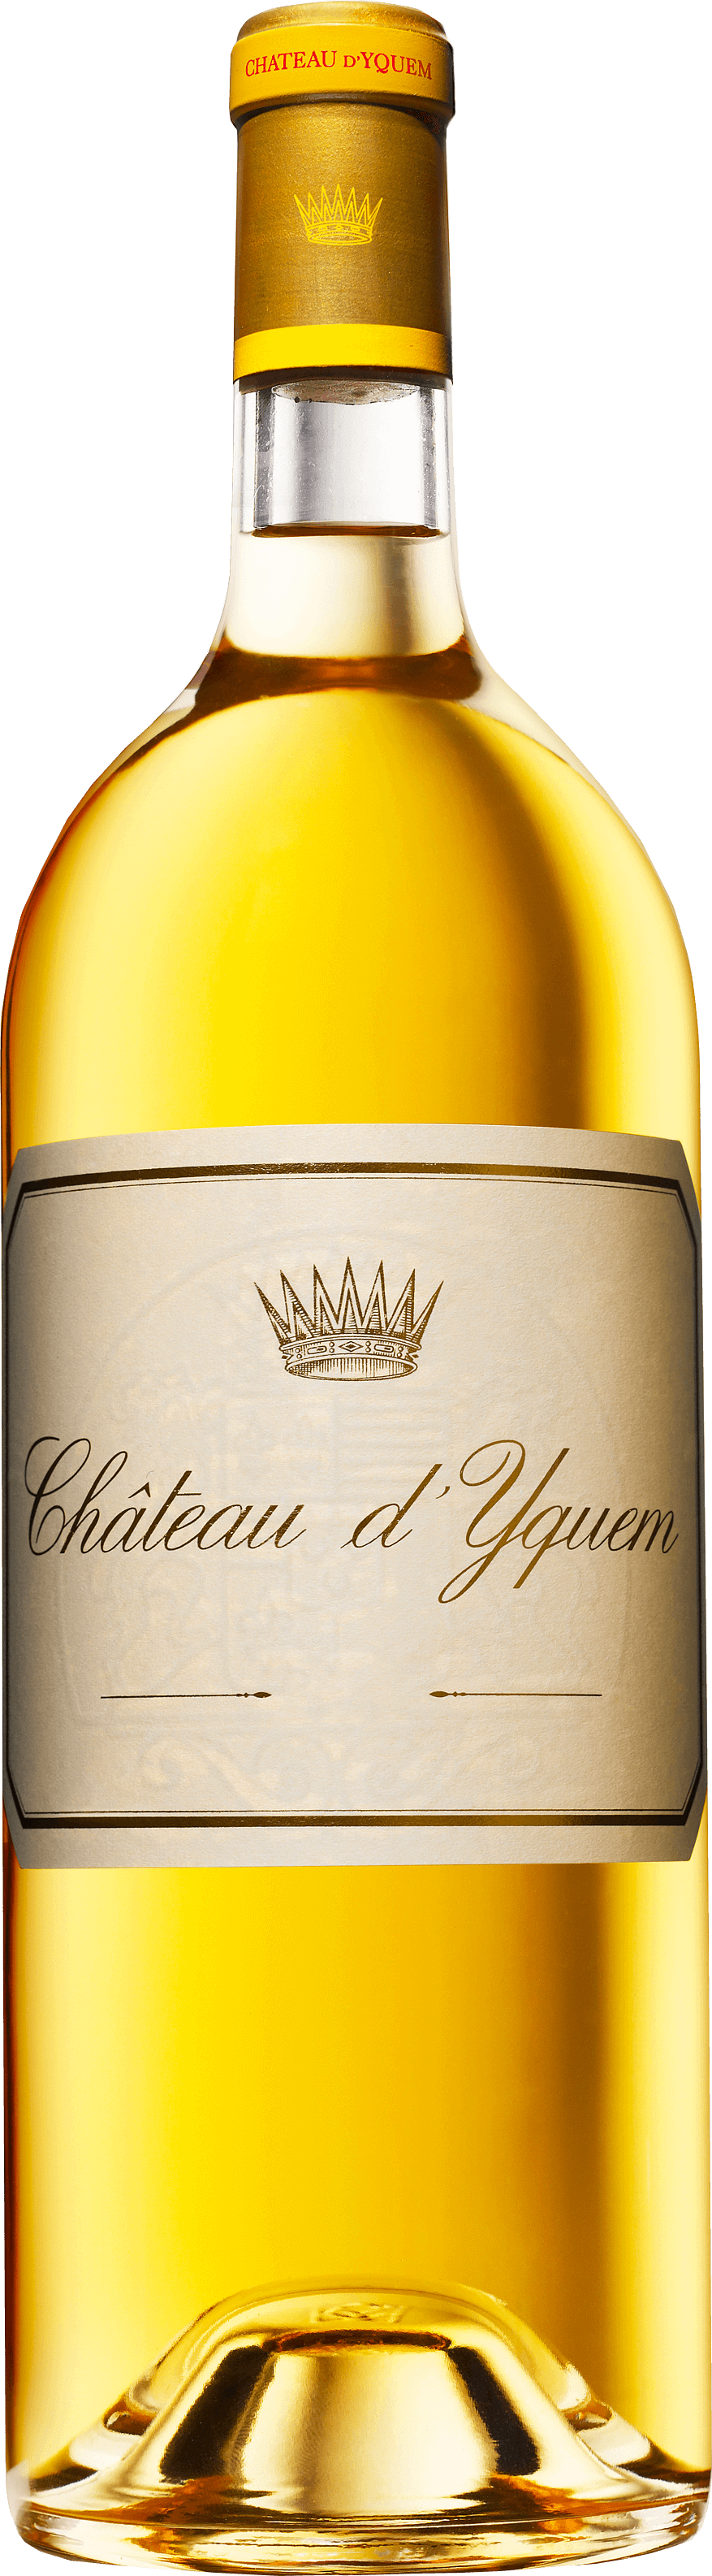 Yquem 1998 1er Cru Suprieur Sauternes, Bordeaux blanc